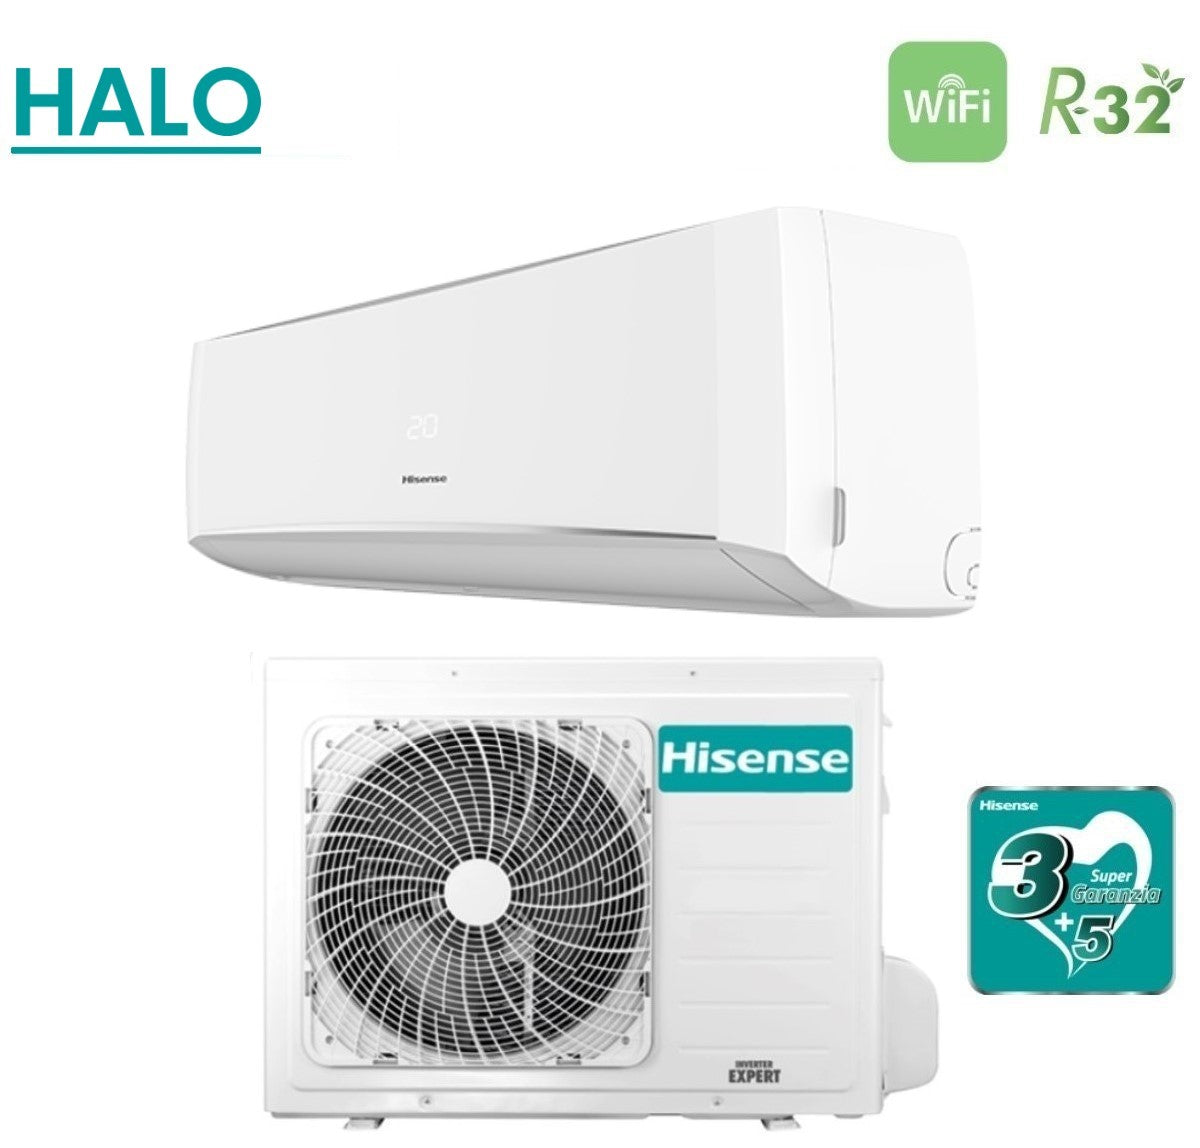 immagine-3-hisense-climatizzatore-condizionatore-hisense-inverter-serie-halo-18000-btu-cbxs181ag-r-32-wi-fi-optional-aa